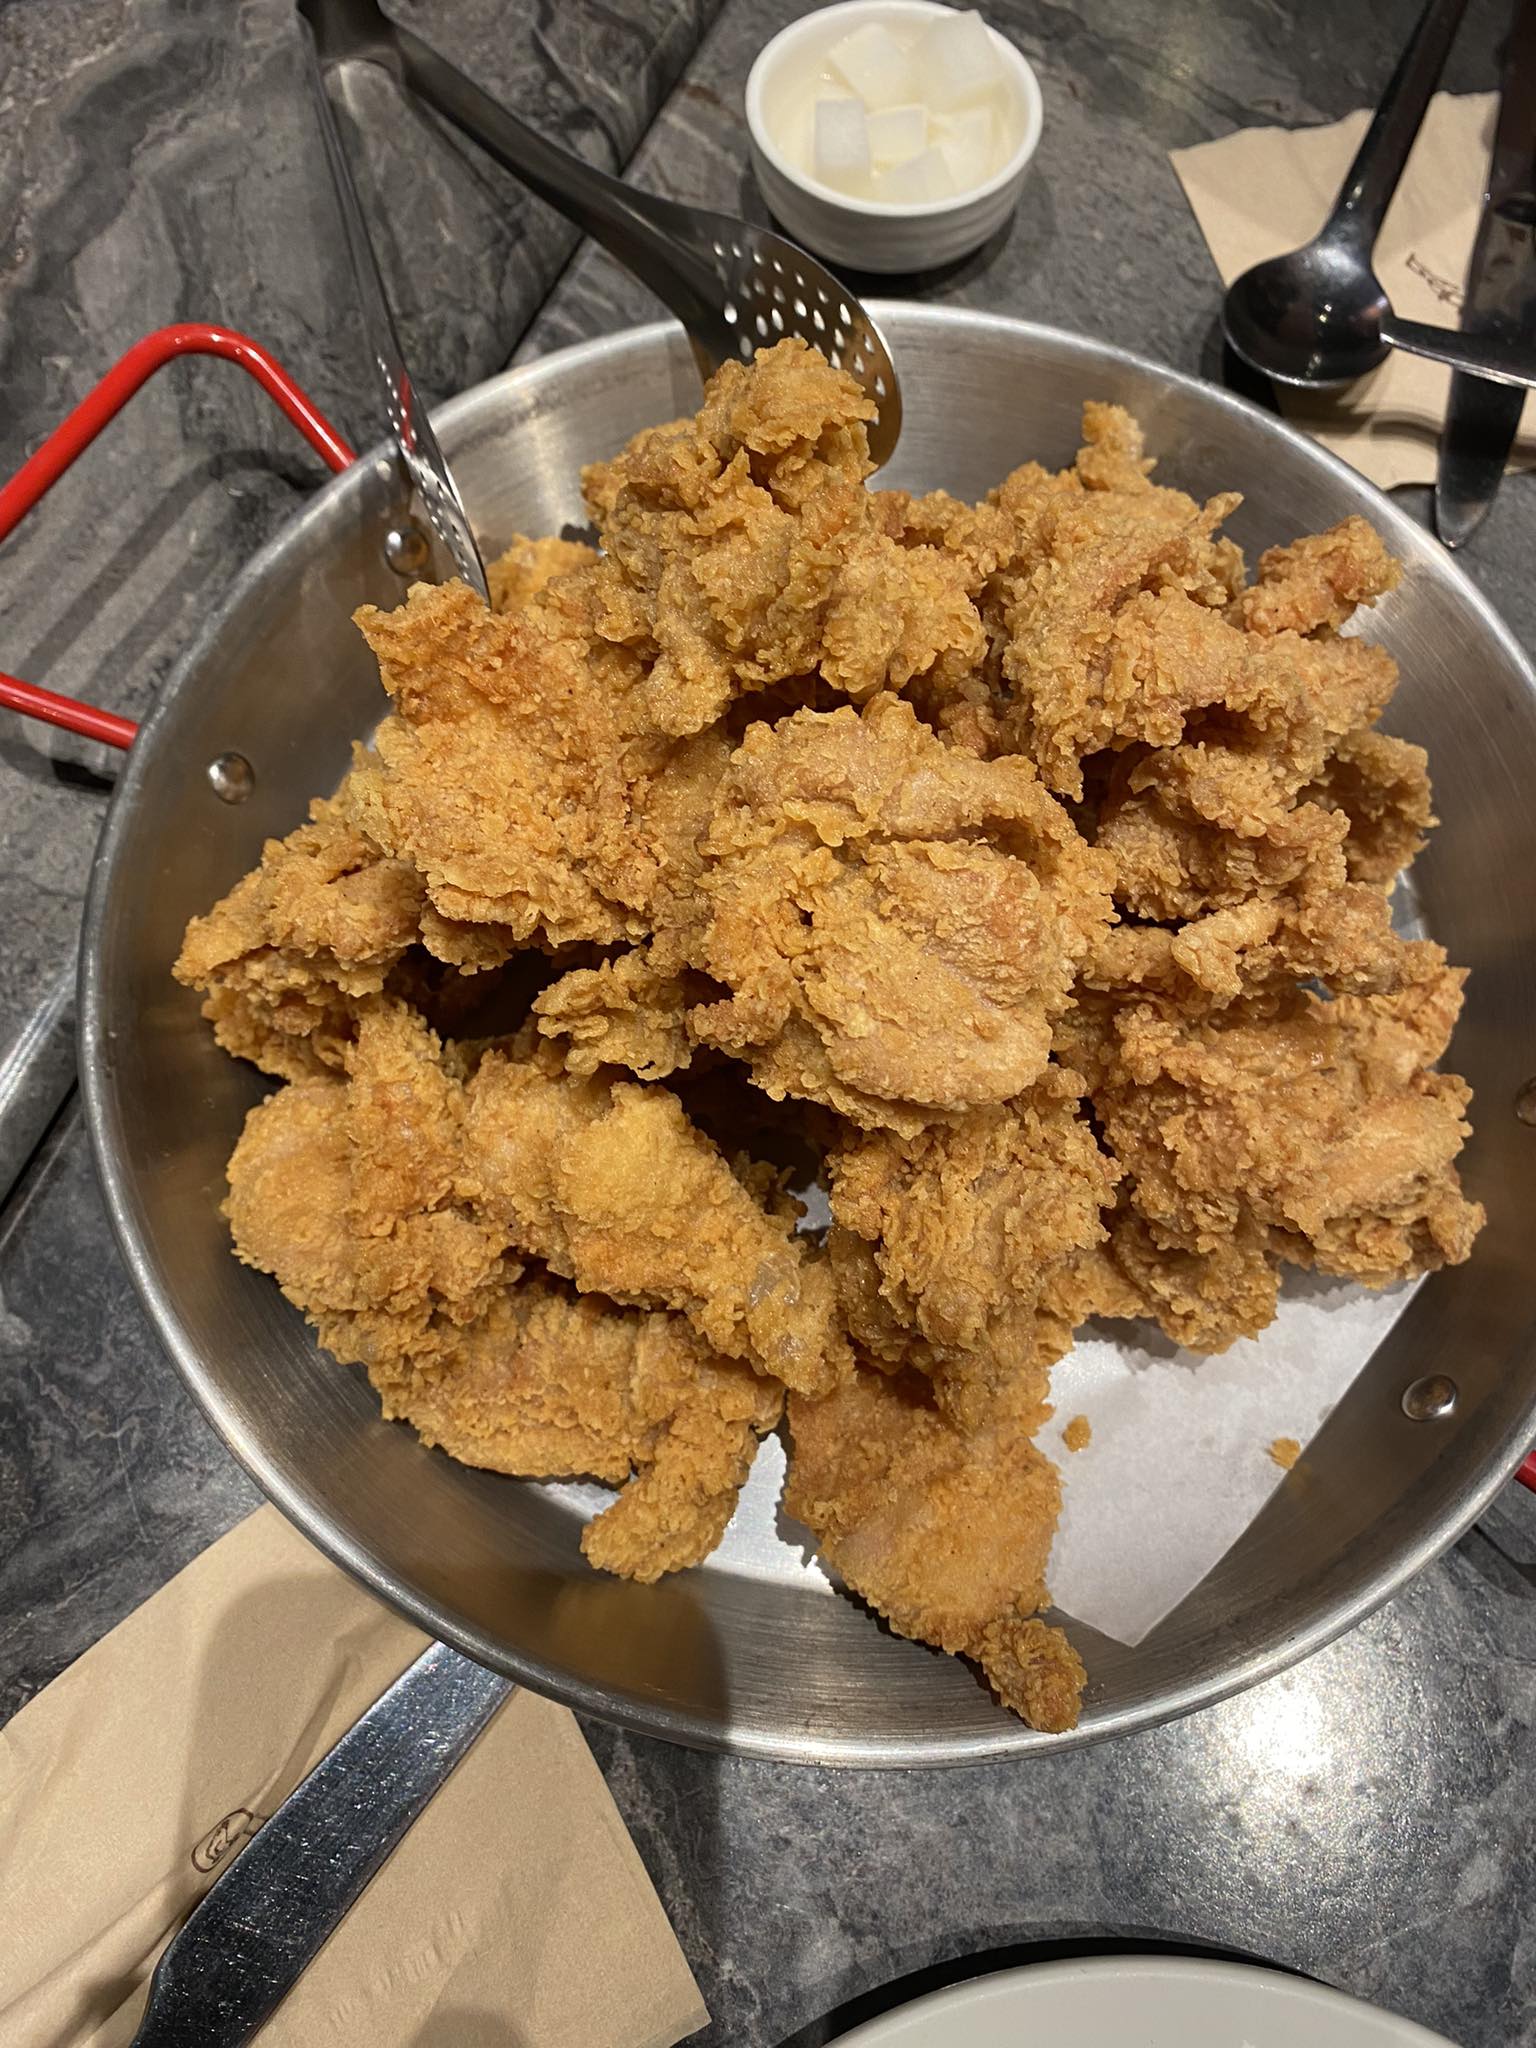 마닐라 BGC 맛집 - 비비큐 (BBQ) 치킨 - 황올 - 황금 올리브 후라이드 치킨 - 황금 후라이드 치킨